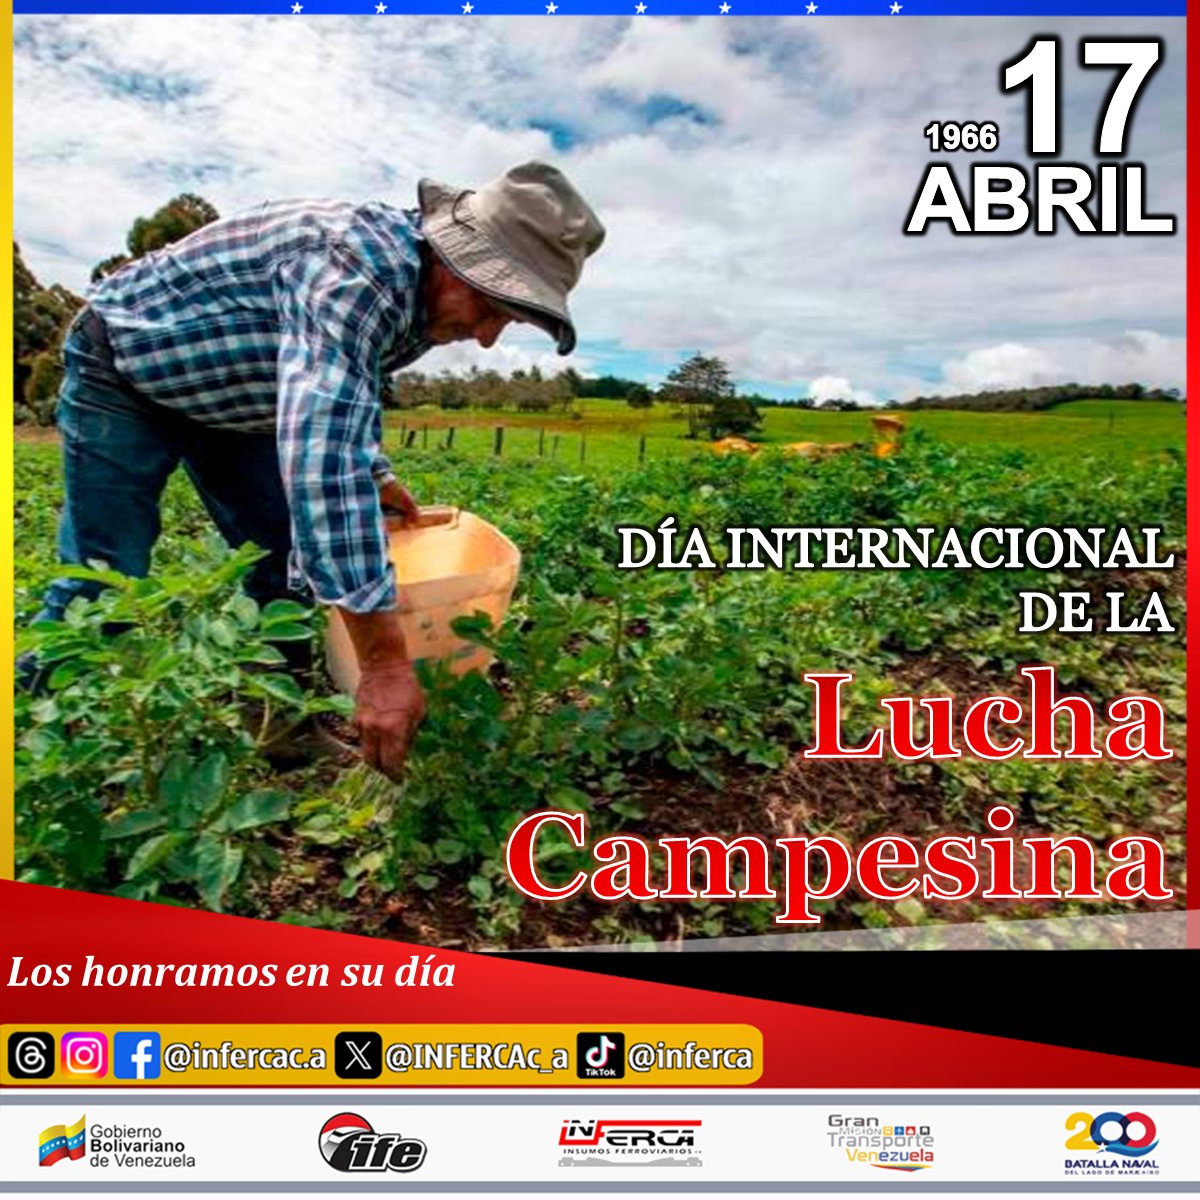 Hoy #17Abr, Se conmemora el Día Internacional de la Lucha Campesina, en memoria y homenaje a todas aquellas personas que han luchado por los derechos de sus tierras, destacando la producción de alimentos y la preservación de las tierras agrícolas.

#Efemerides #LuchasCampesinas